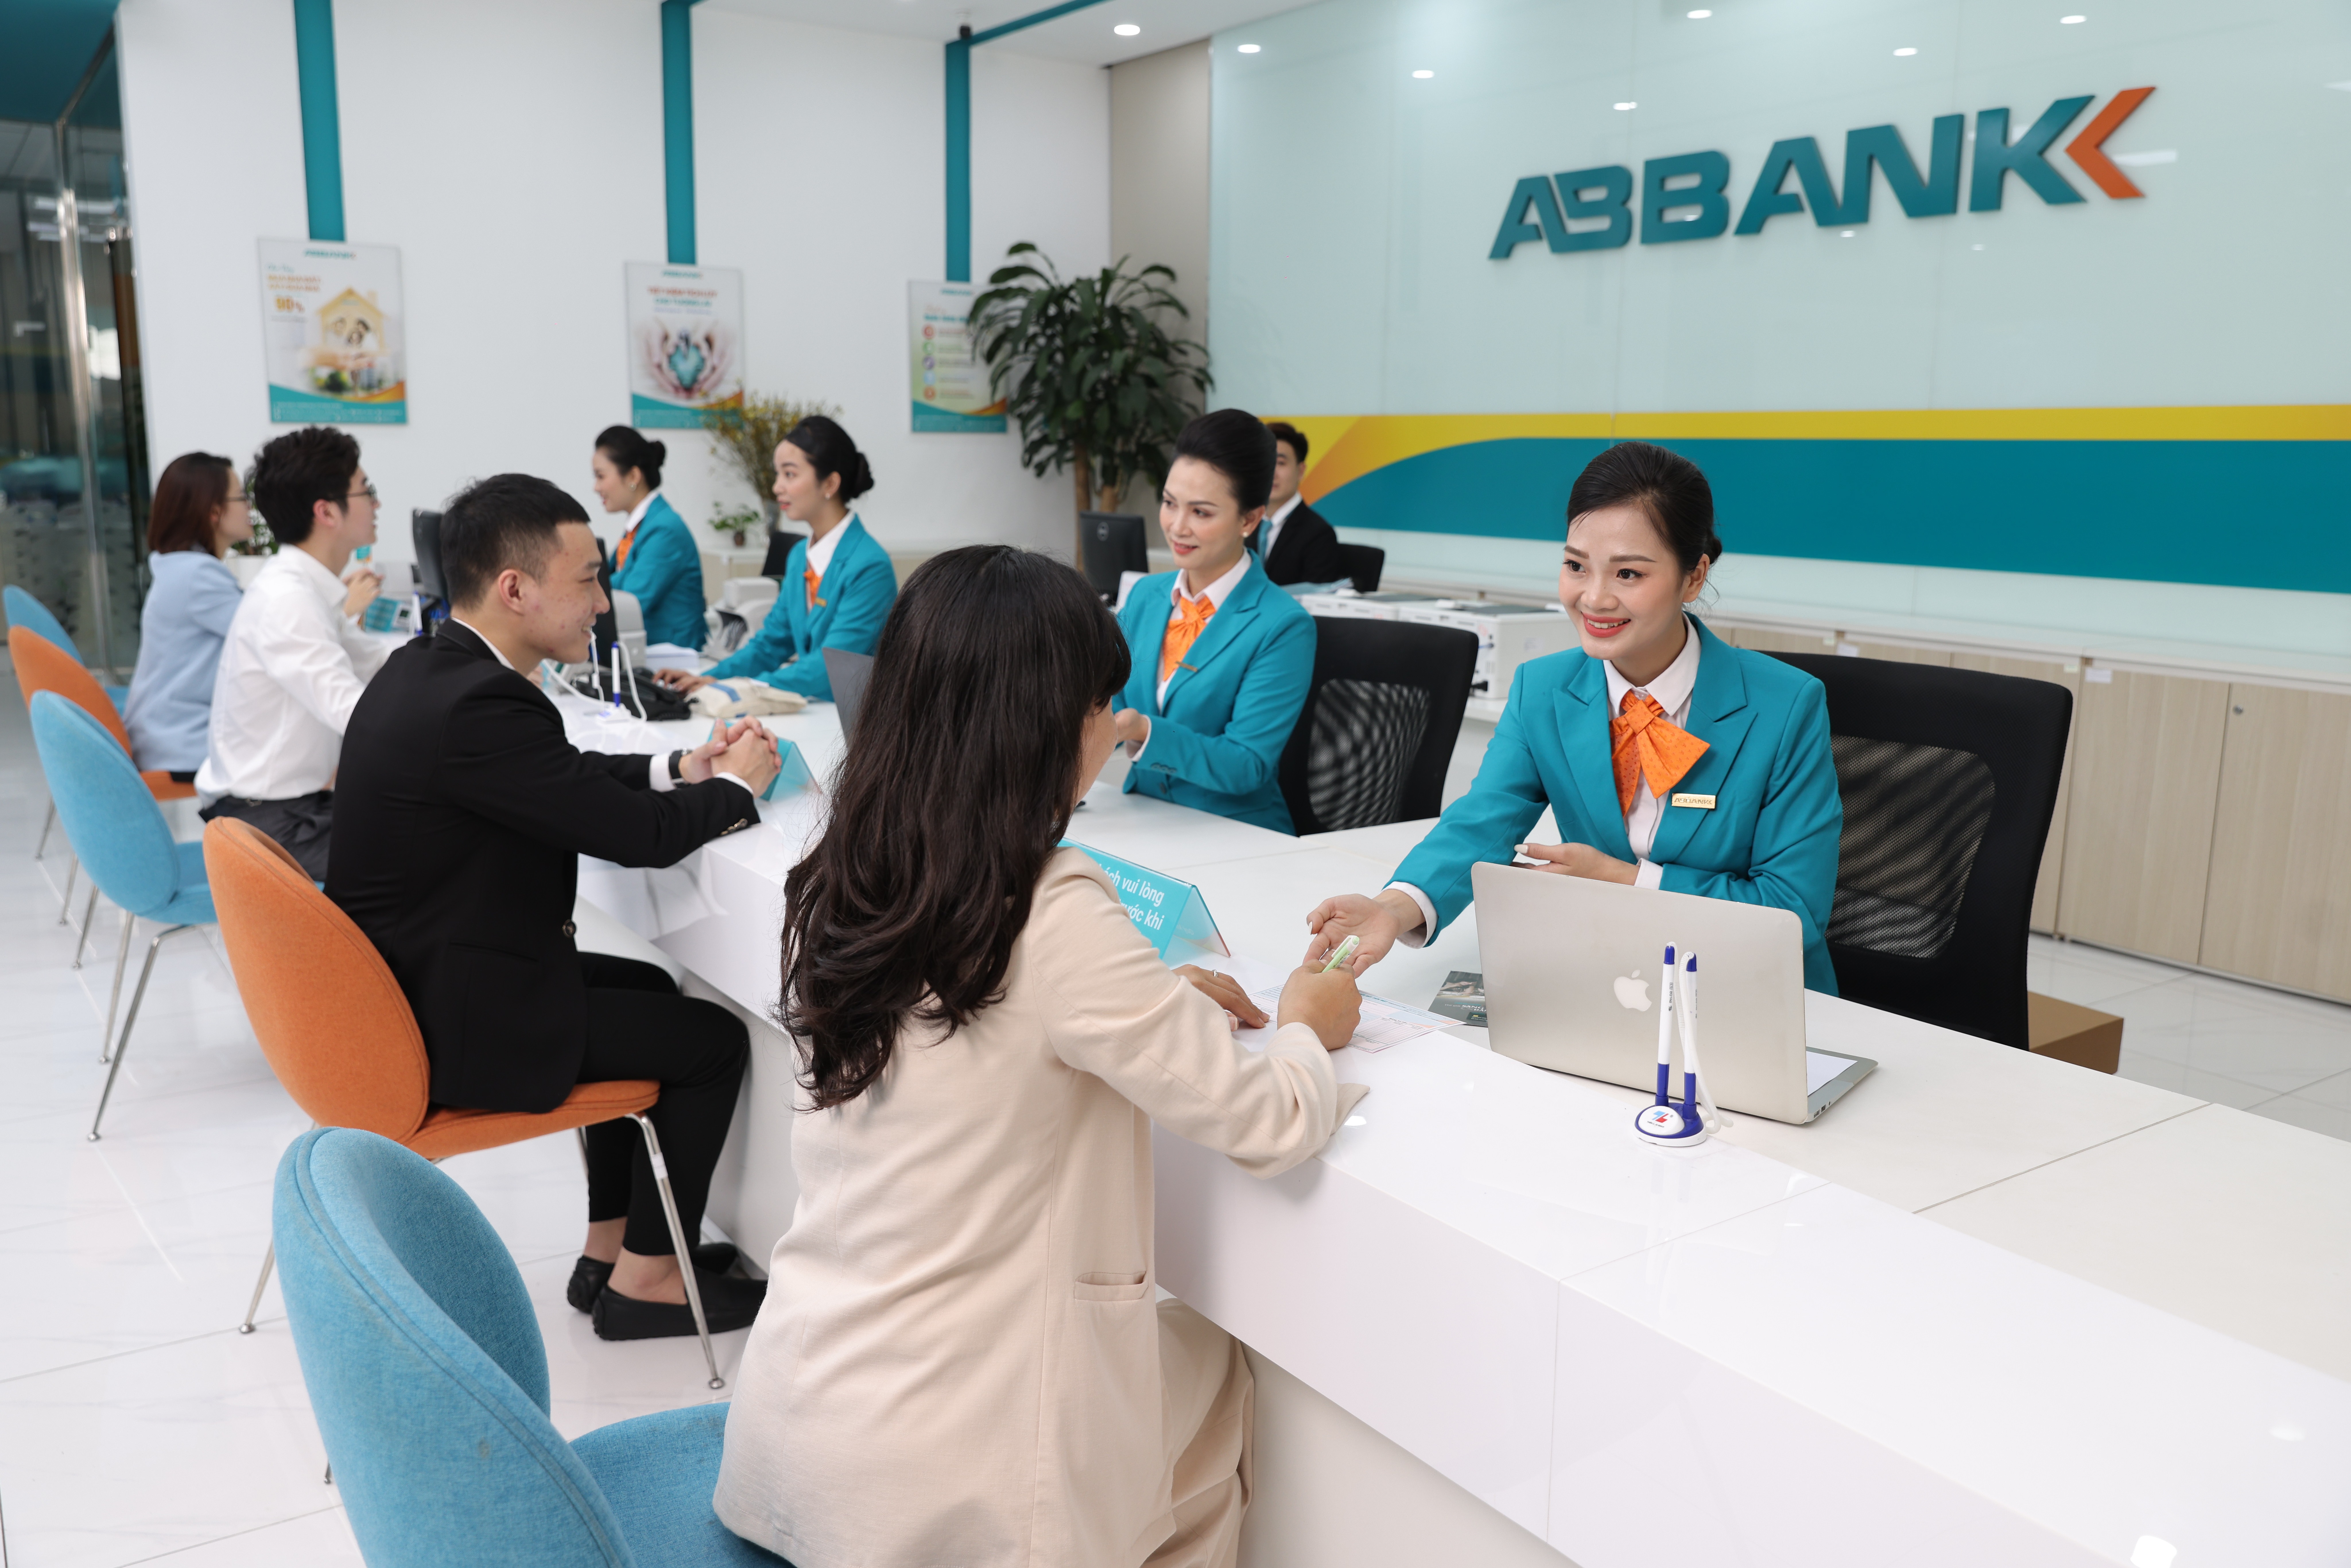 ABBANK luôn chú trọng phát triển các sản phẩm dịch vụ, giải pháp tài chính hiệu quả và linh hoạt, phù hợp với từng nhóm khách hàng.